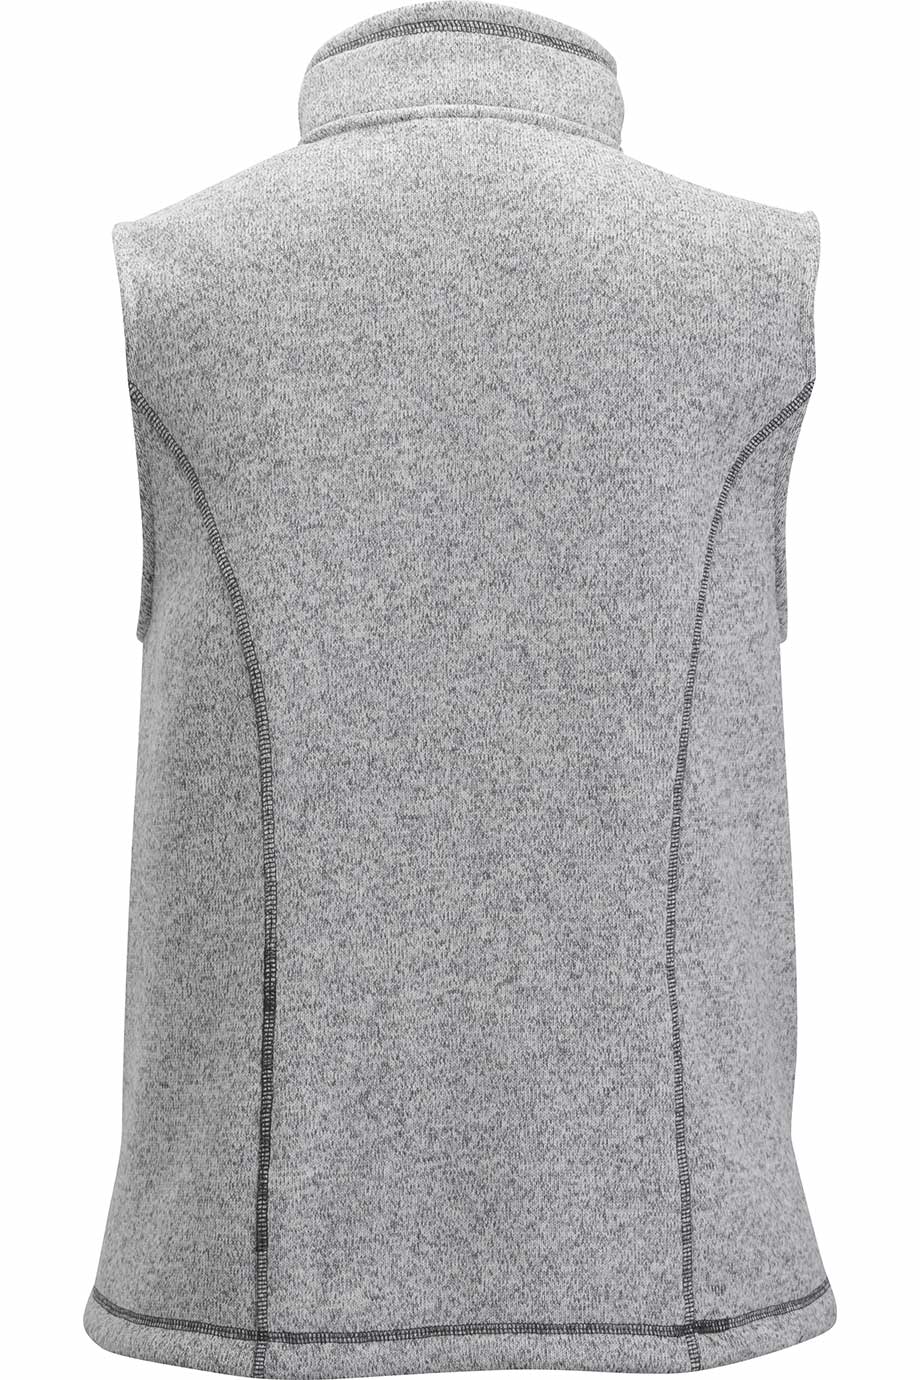 Edwards 6463 Women's Sweater Knit Fleece Vest Grey Back